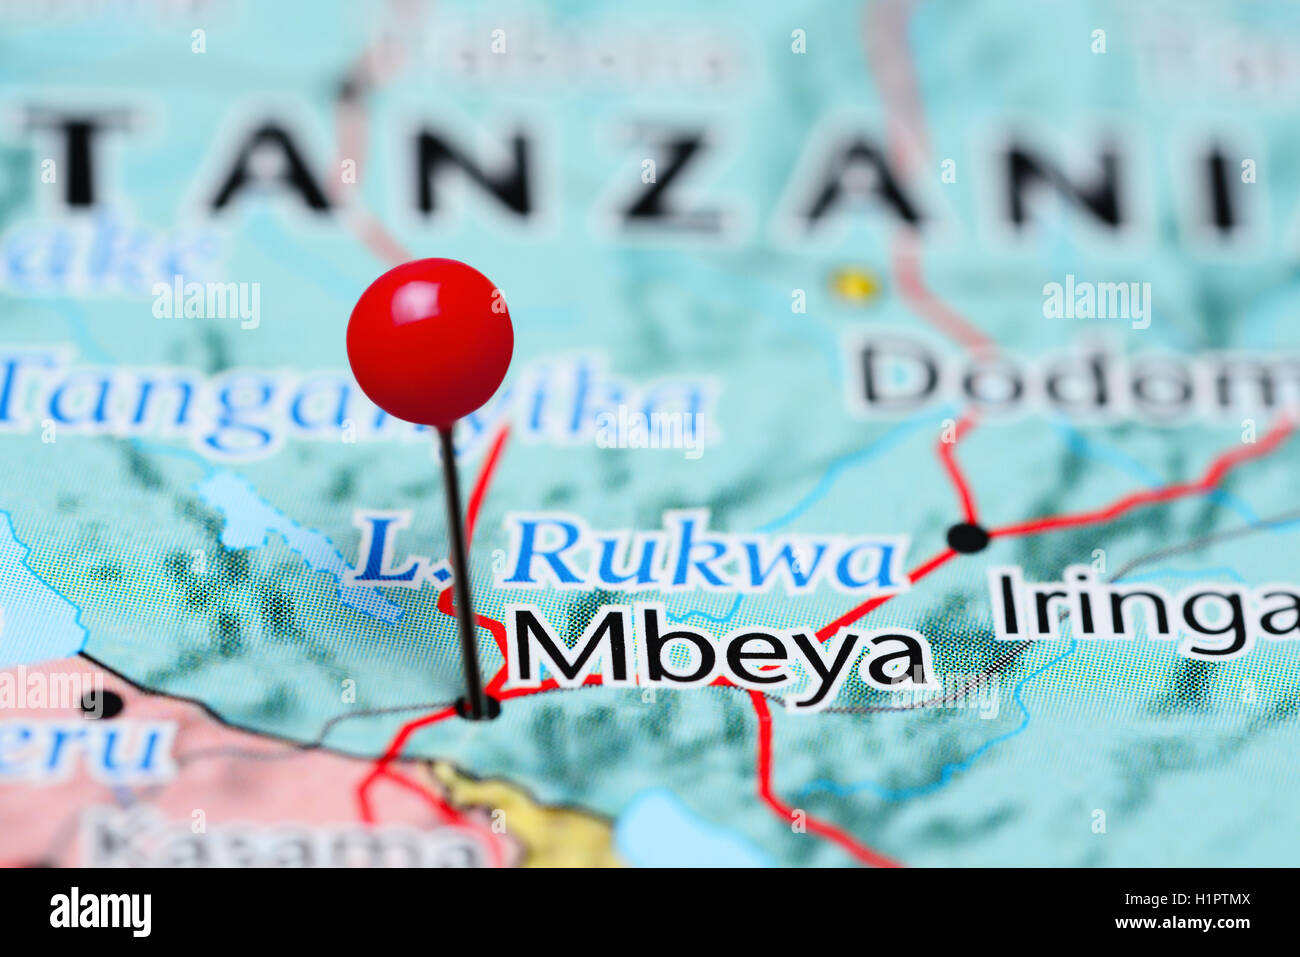 Mbeya pinned on a map of Tanzania Stock Photo